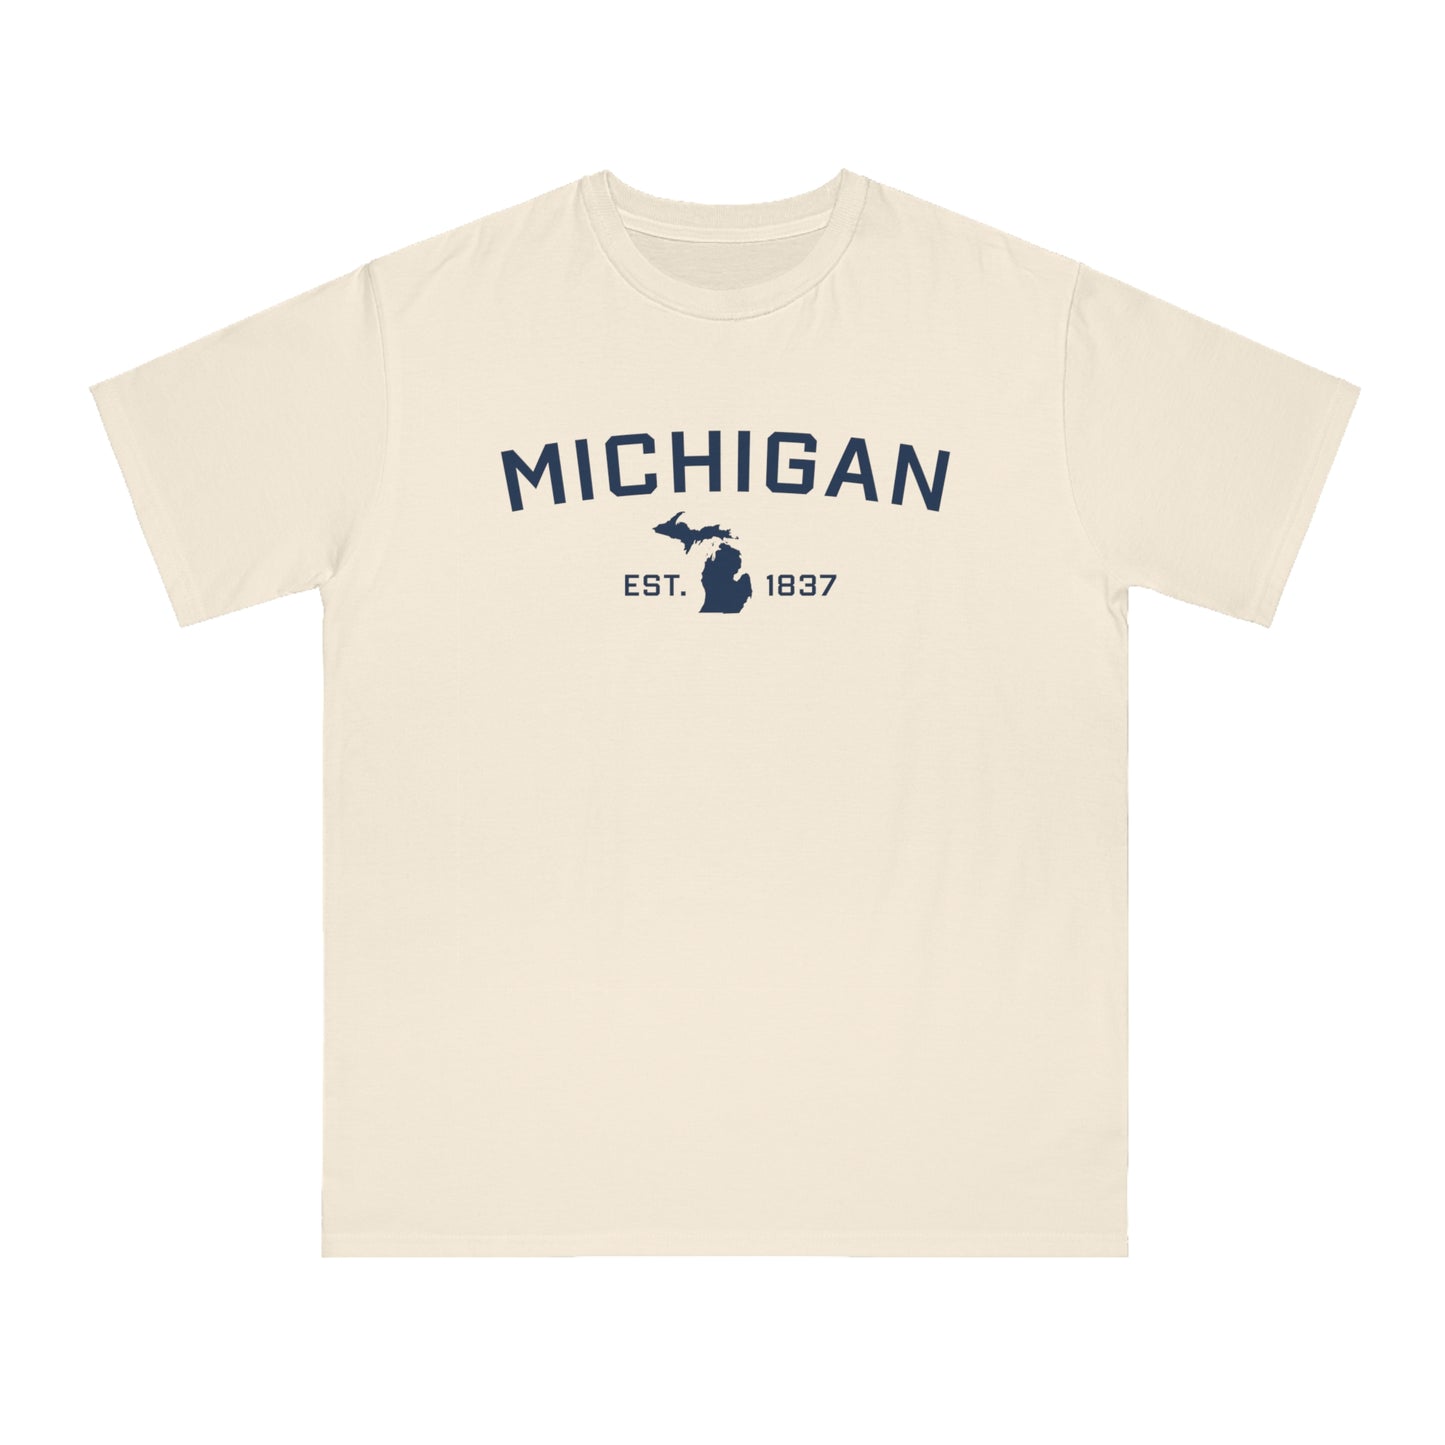 'Michigan EST 1837' T-Shirt | Unisex Organic